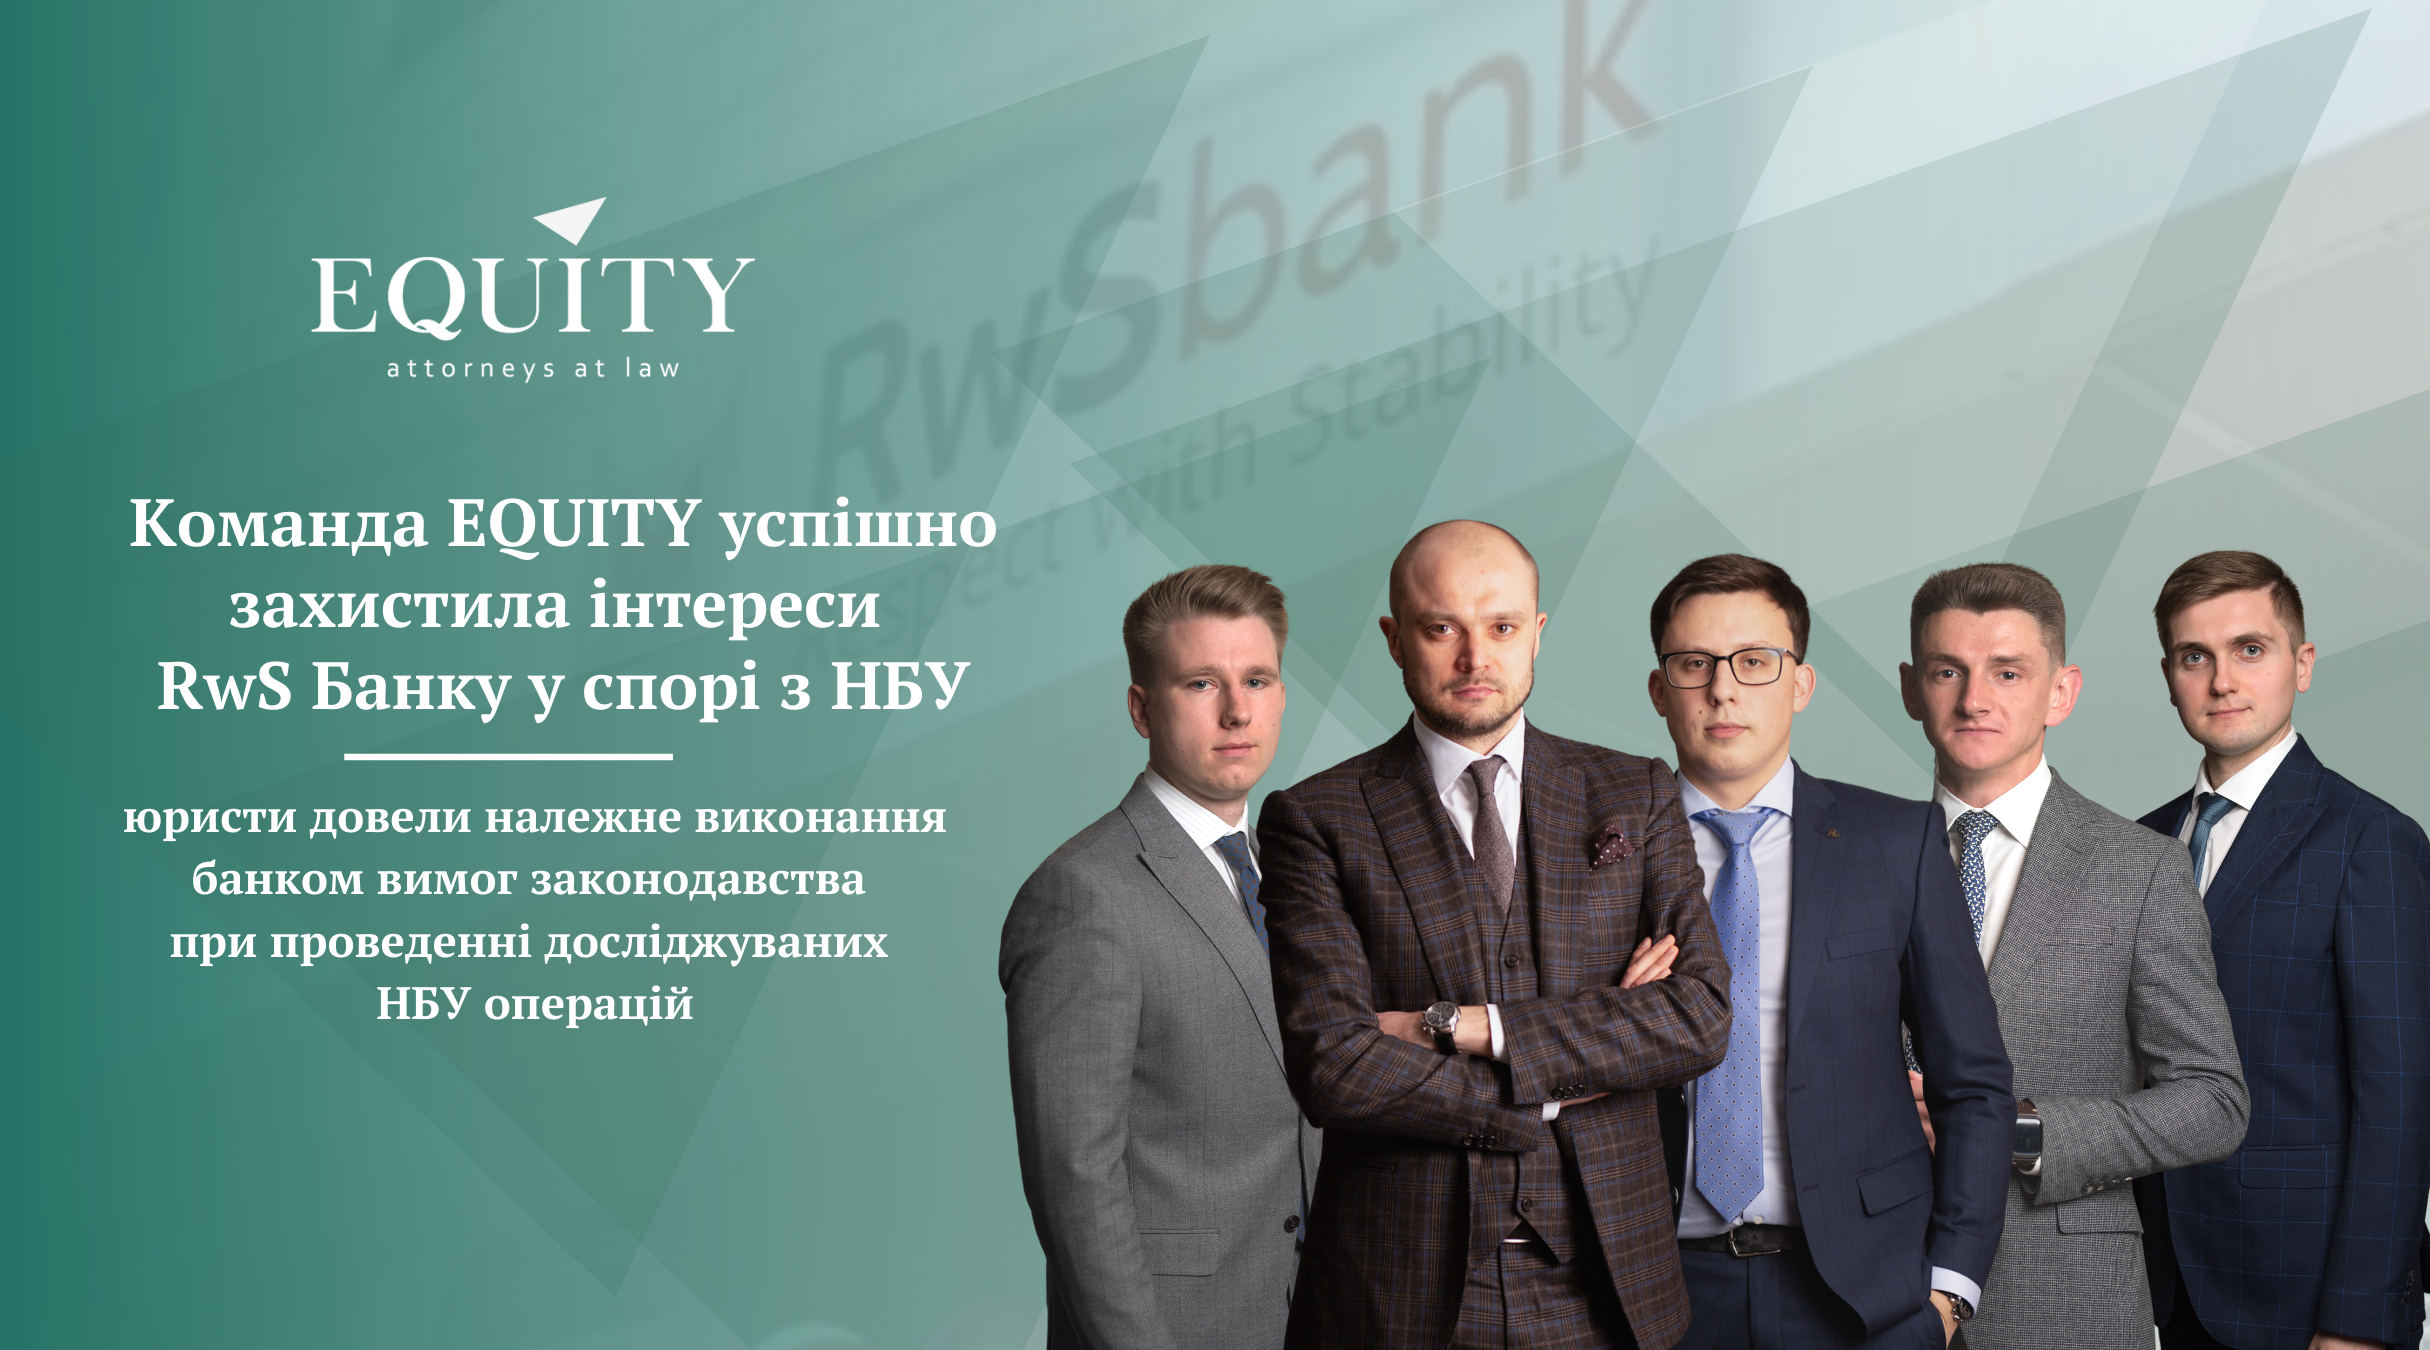 Команда EQUITY успішно захистила інтереси RwS Банку у спорі з НБУ